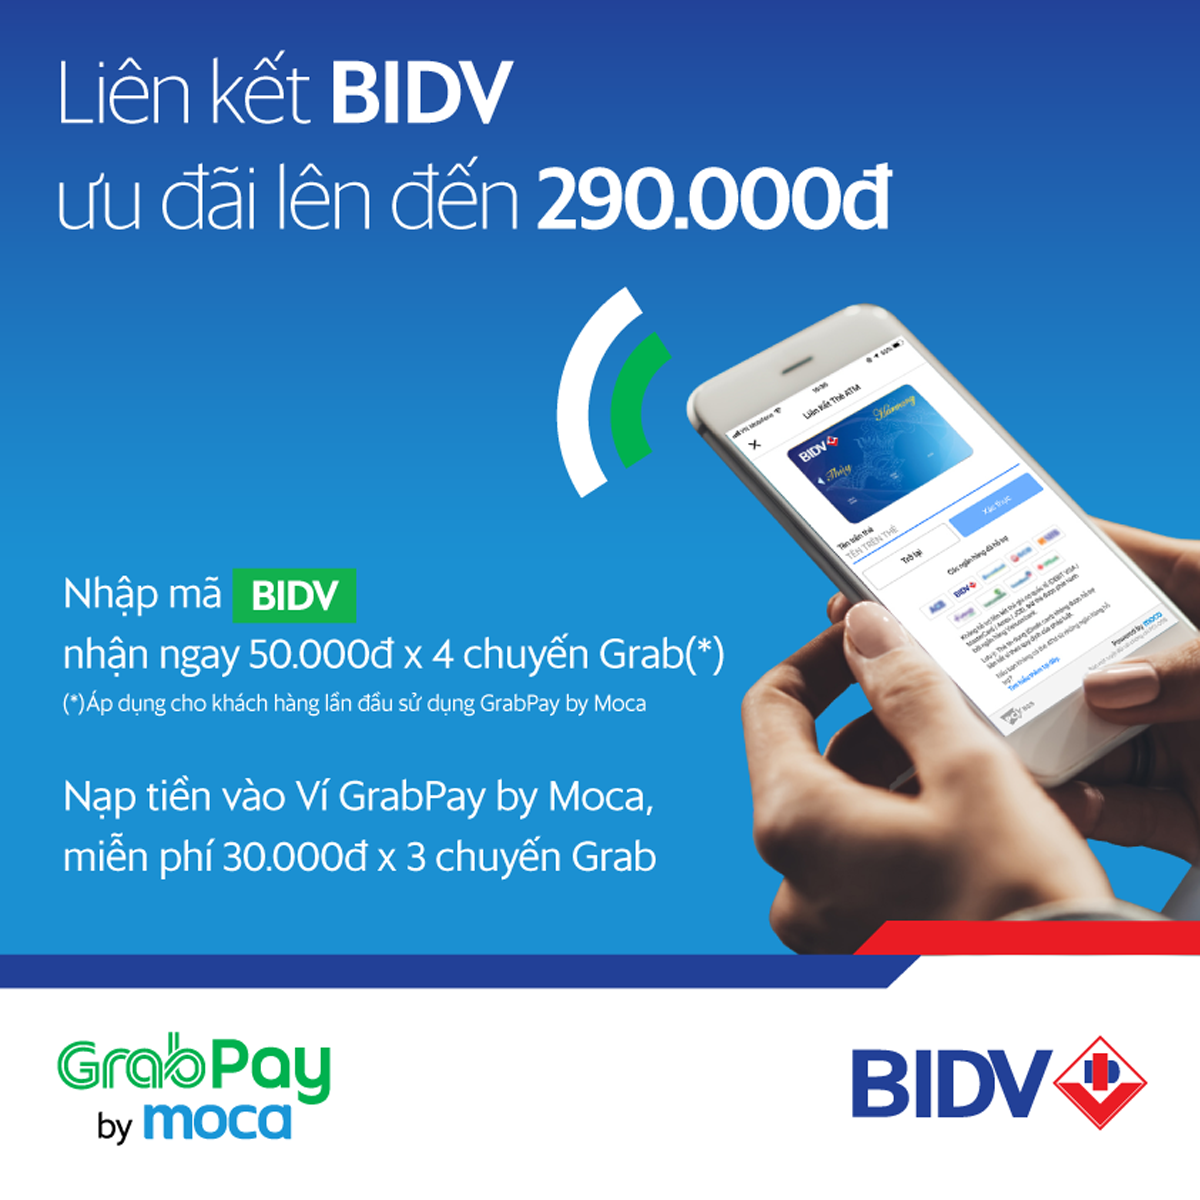 GrabPay by Moca dành tặng ưu đãi hấp dẫn cho khách hàng BIDV